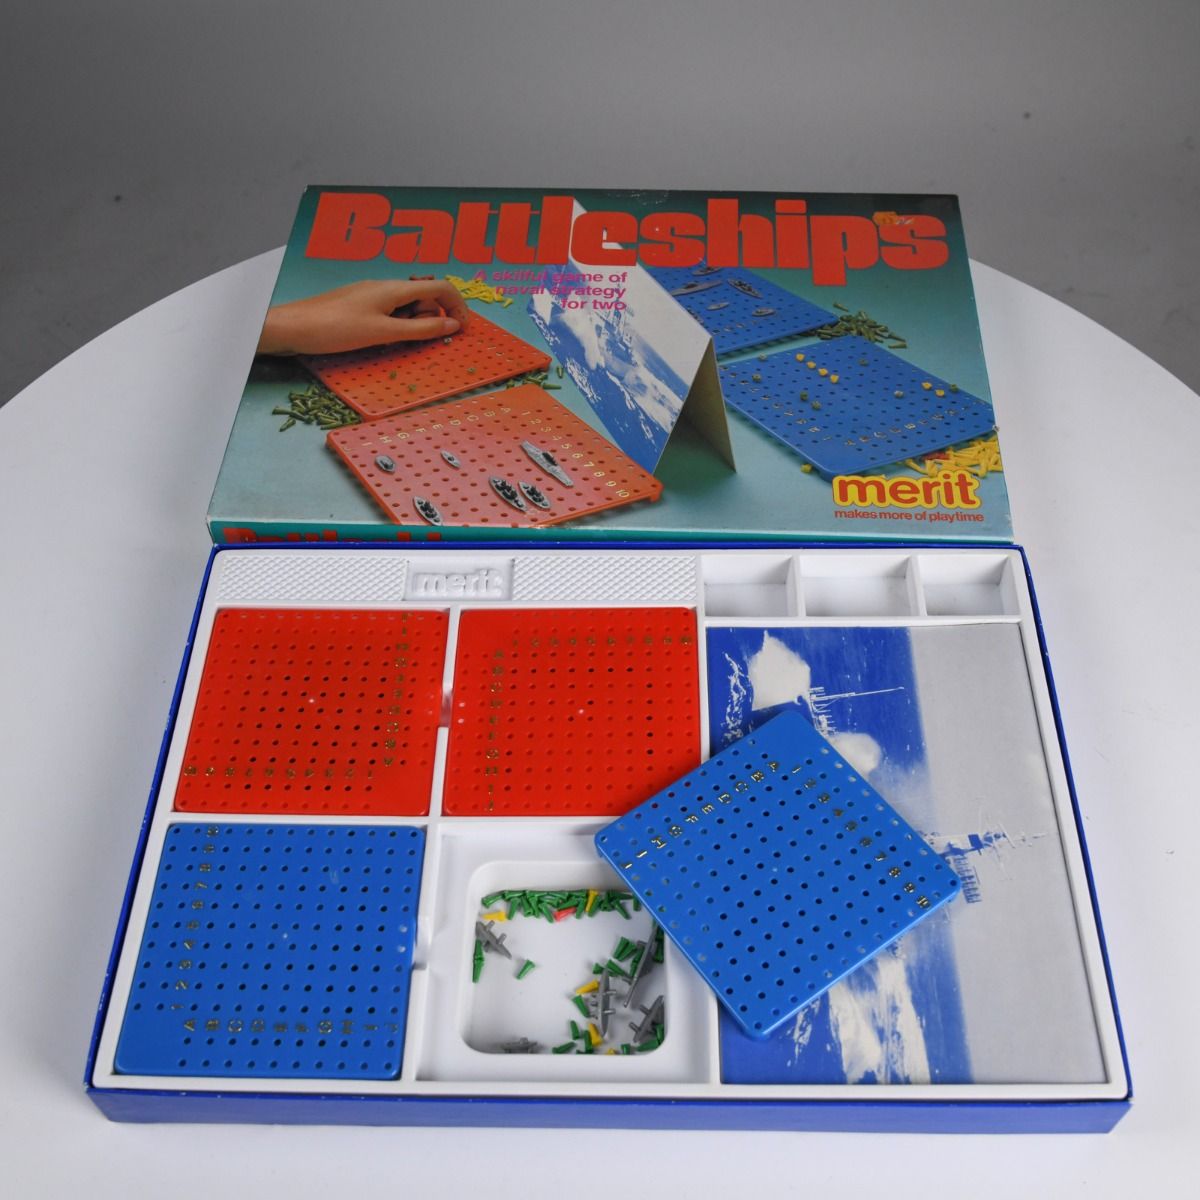 'Battleships' 1960s Board Game